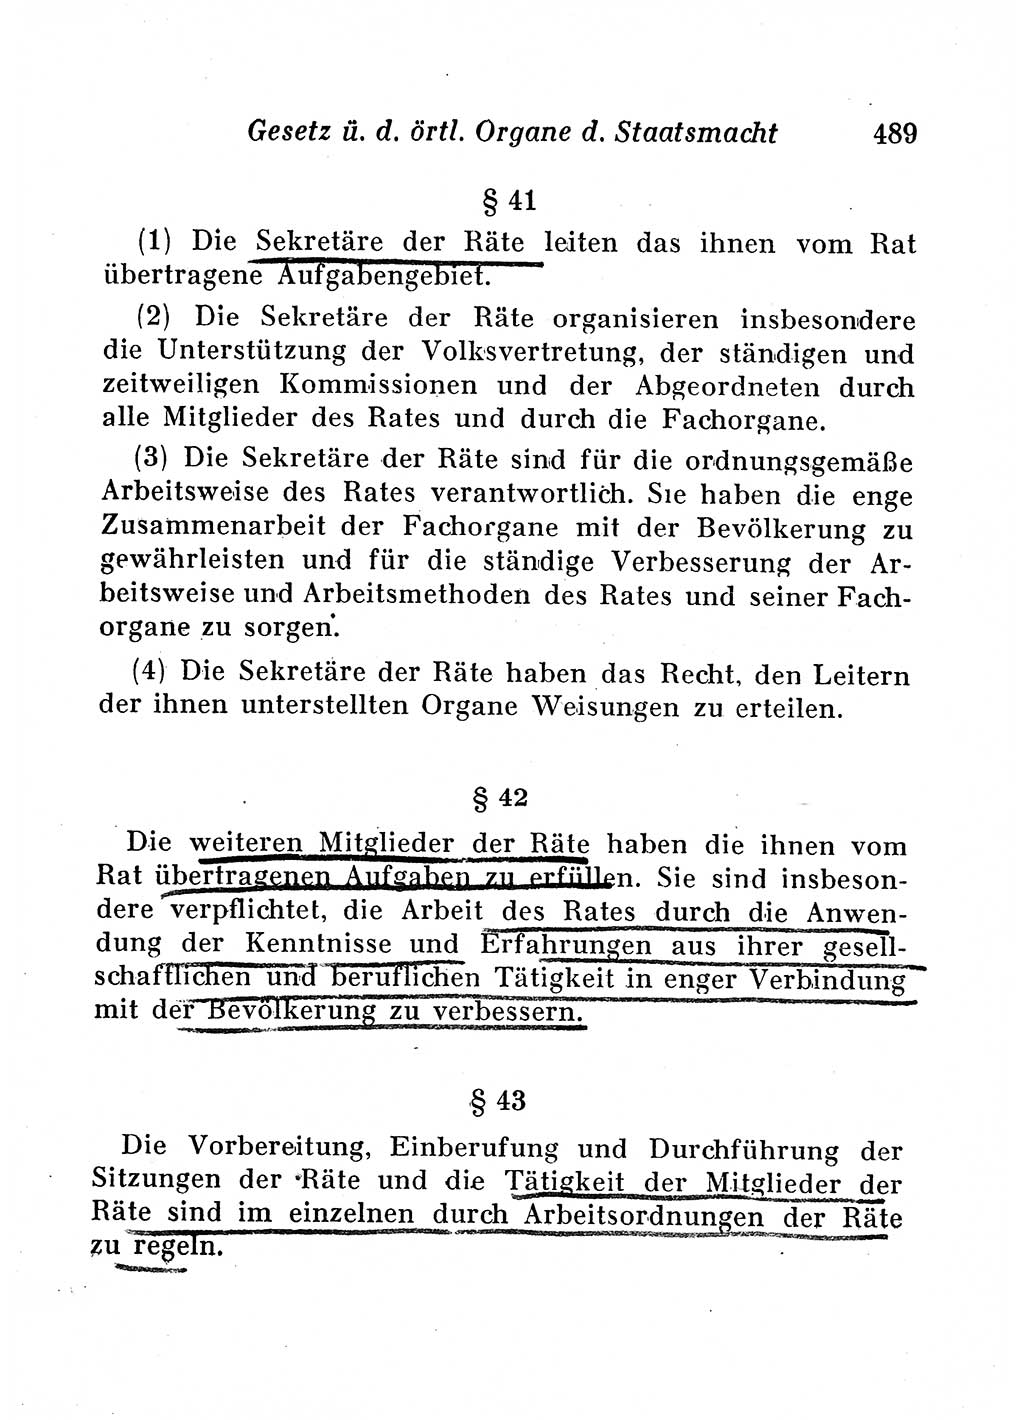 Staats- und verwaltungsrechtliche Gesetze der Deutschen Demokratischen Republik (DDR) 1958, Seite 489 (StVerwR Ges. DDR 1958, S. 489)